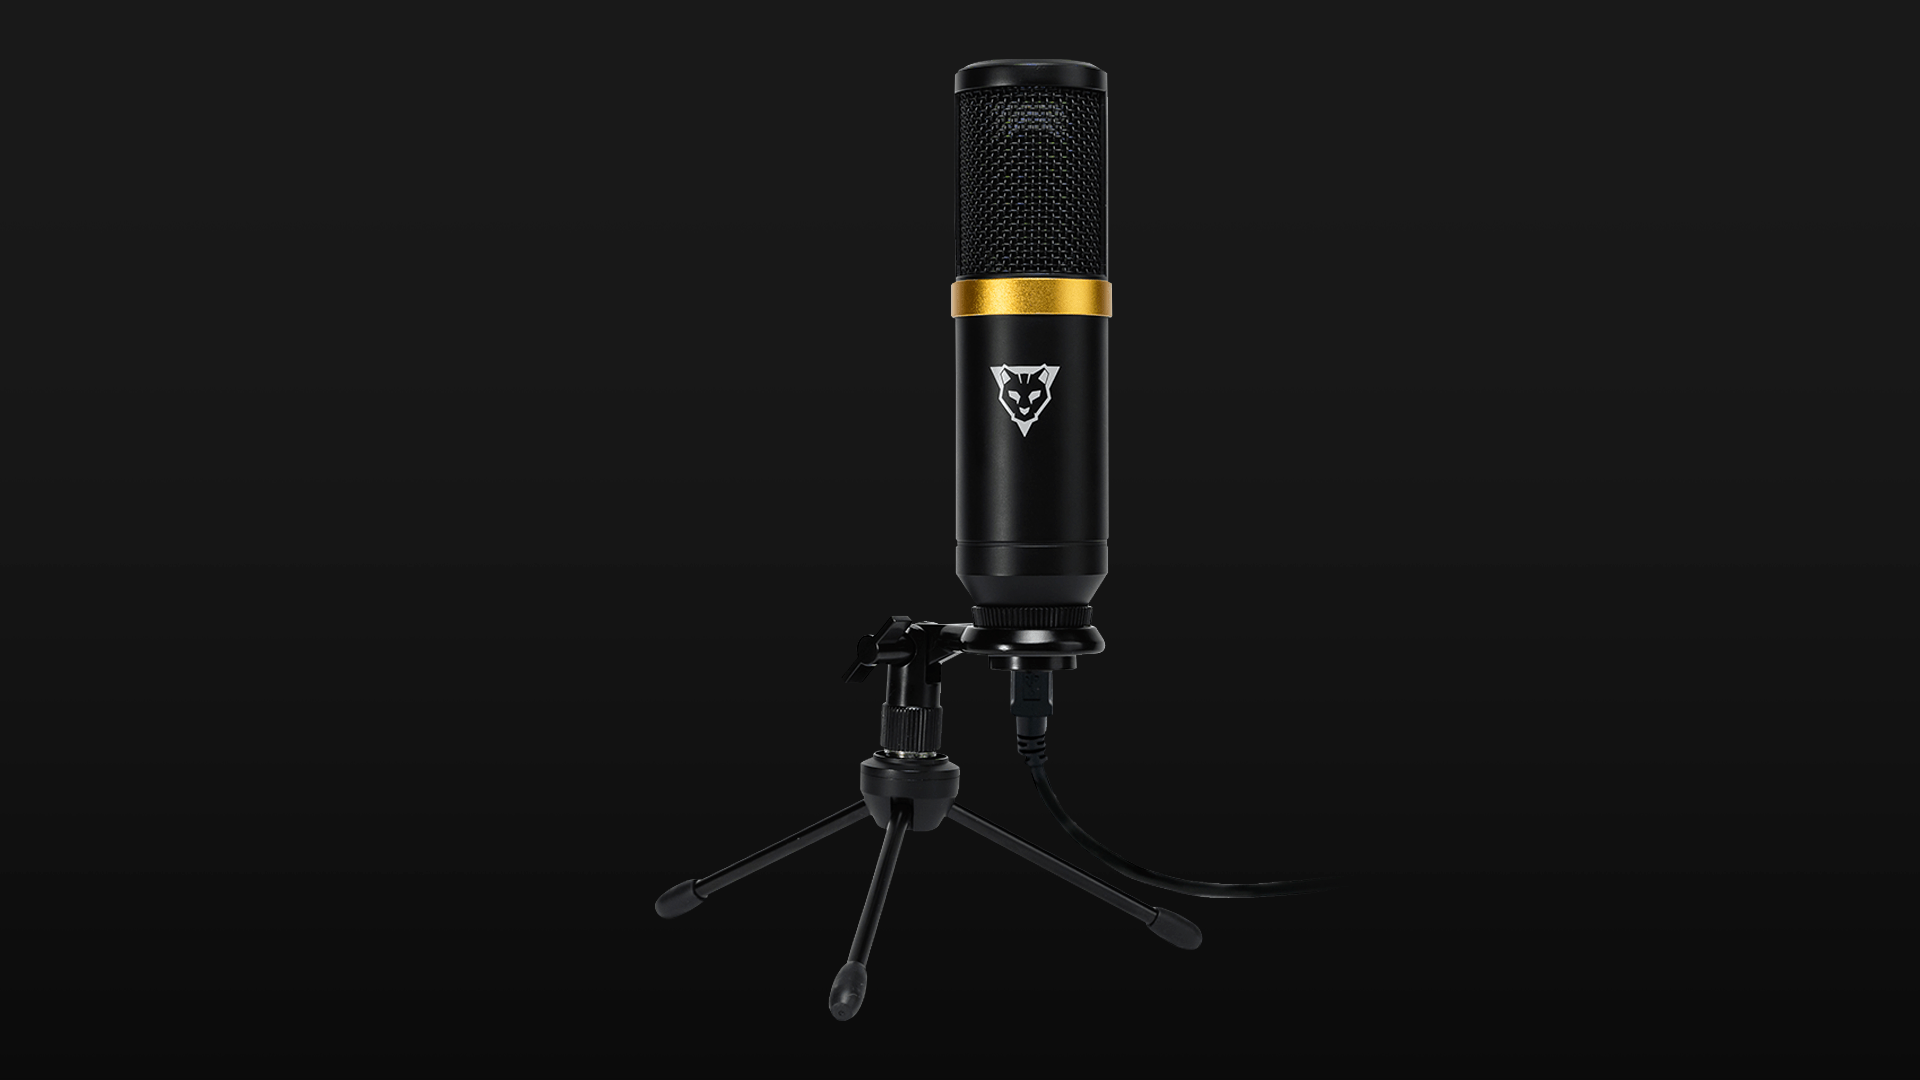 Micrófono - OGMIC01 - Ocelot Gaming - Venta de microfonos para pc